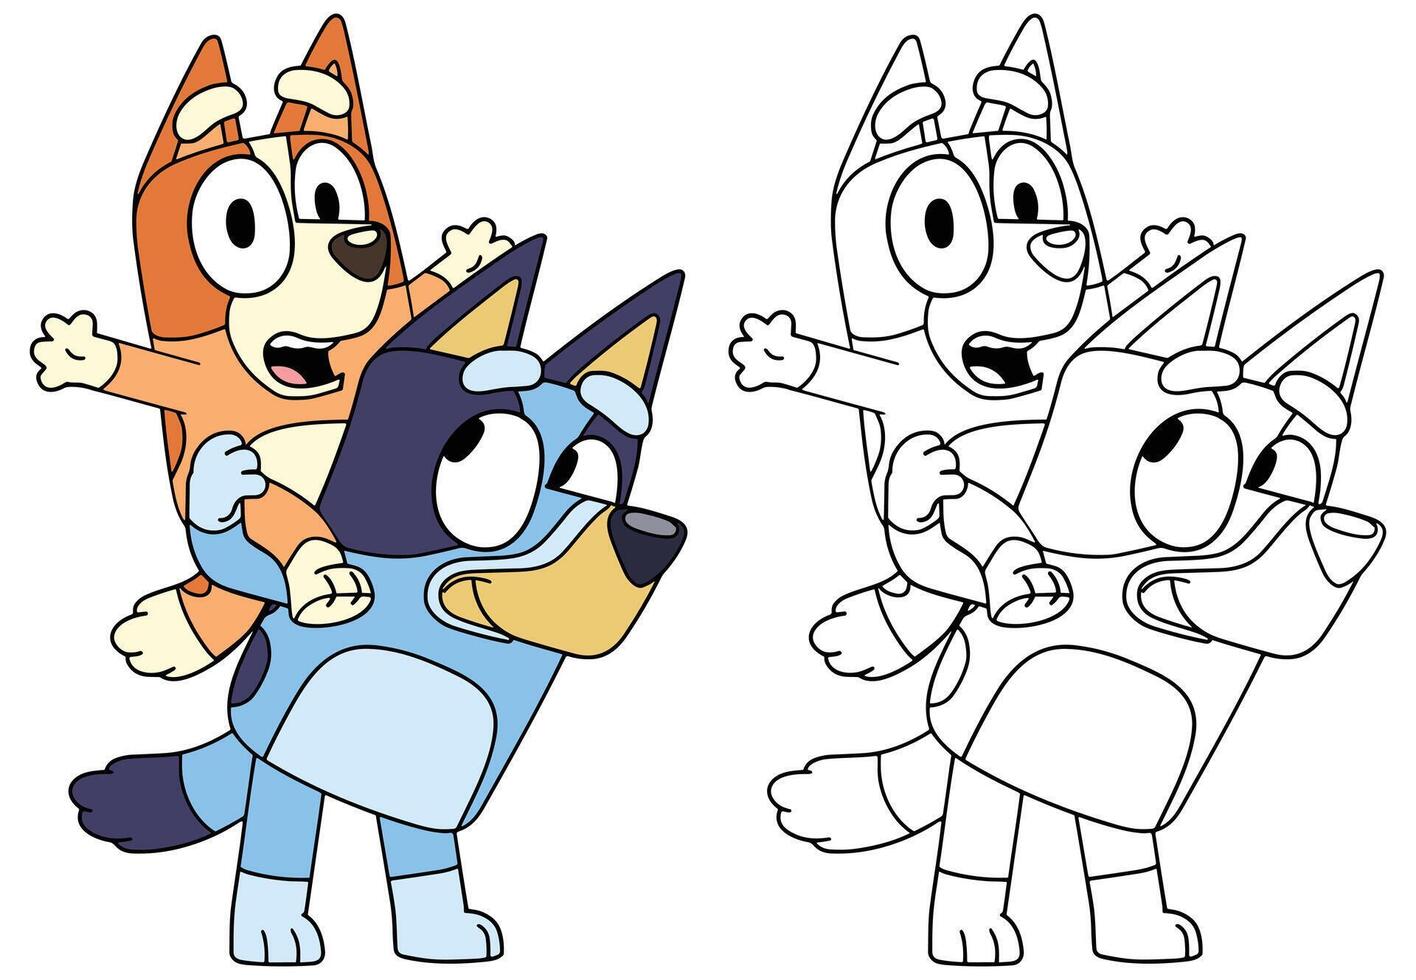 Bluey family, Bluey cartoon, Bluey kids' show, Bingo vector